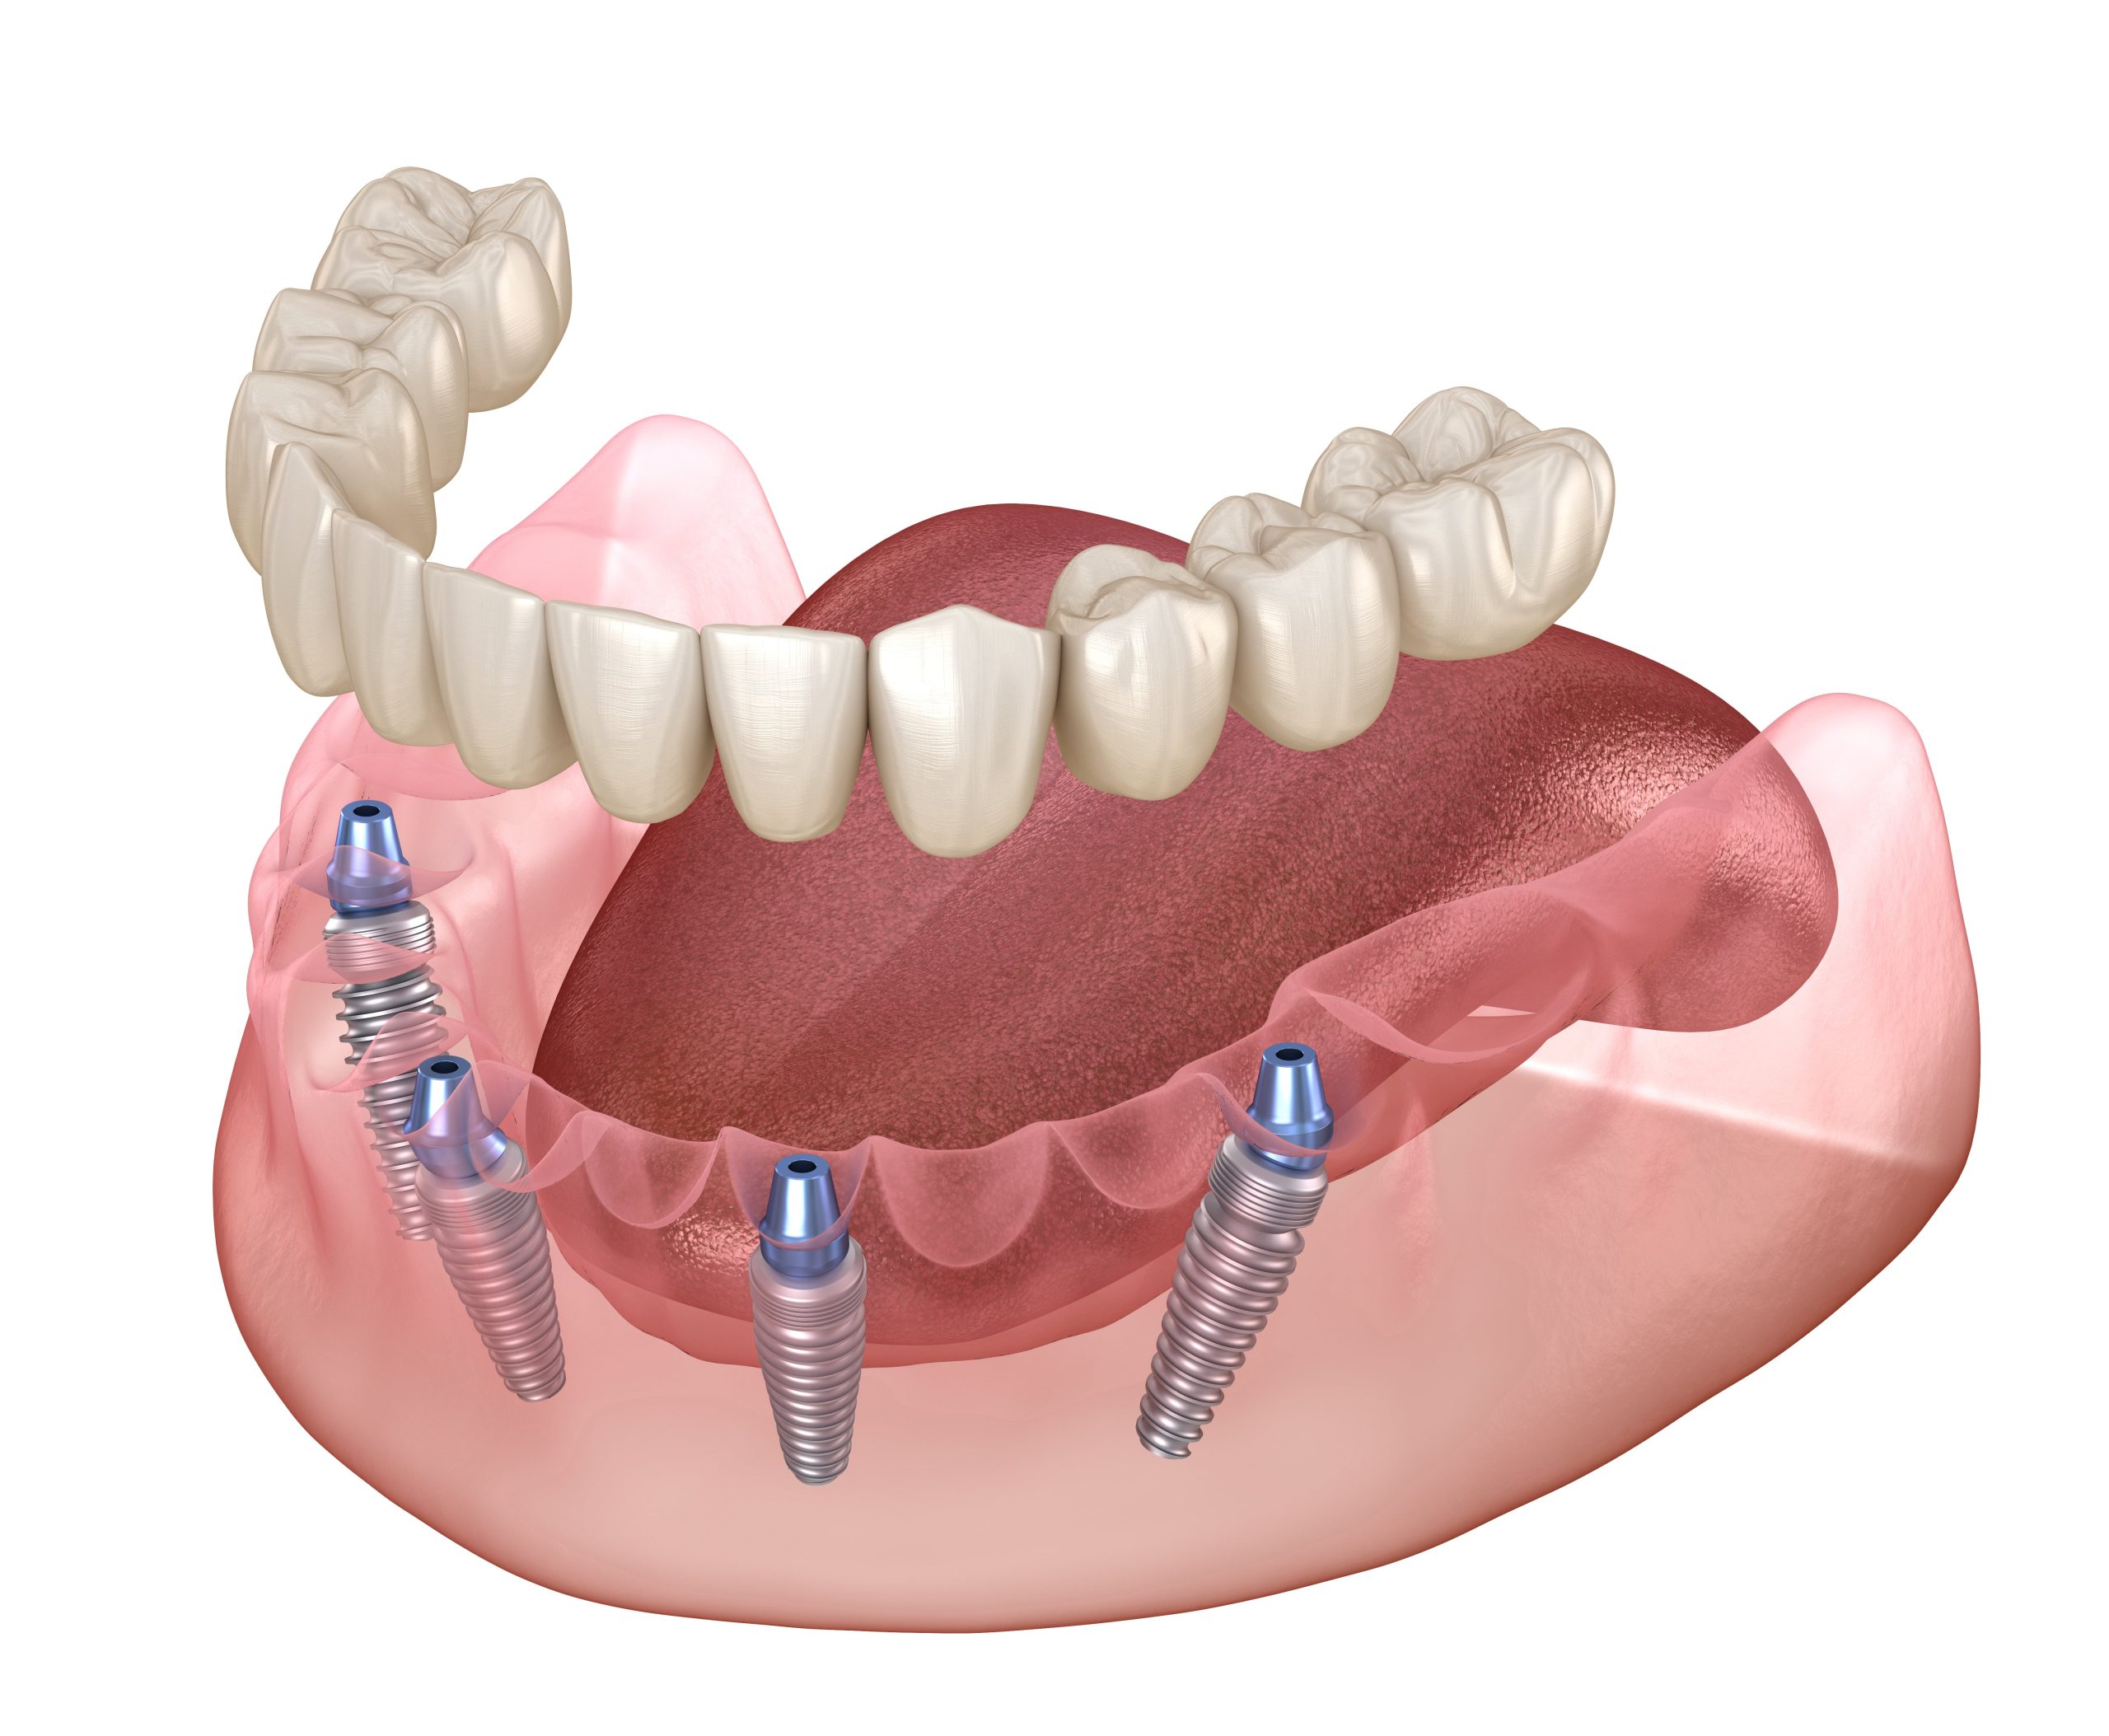 Имплантация зубов all on 4: показания, особенности и преимущества